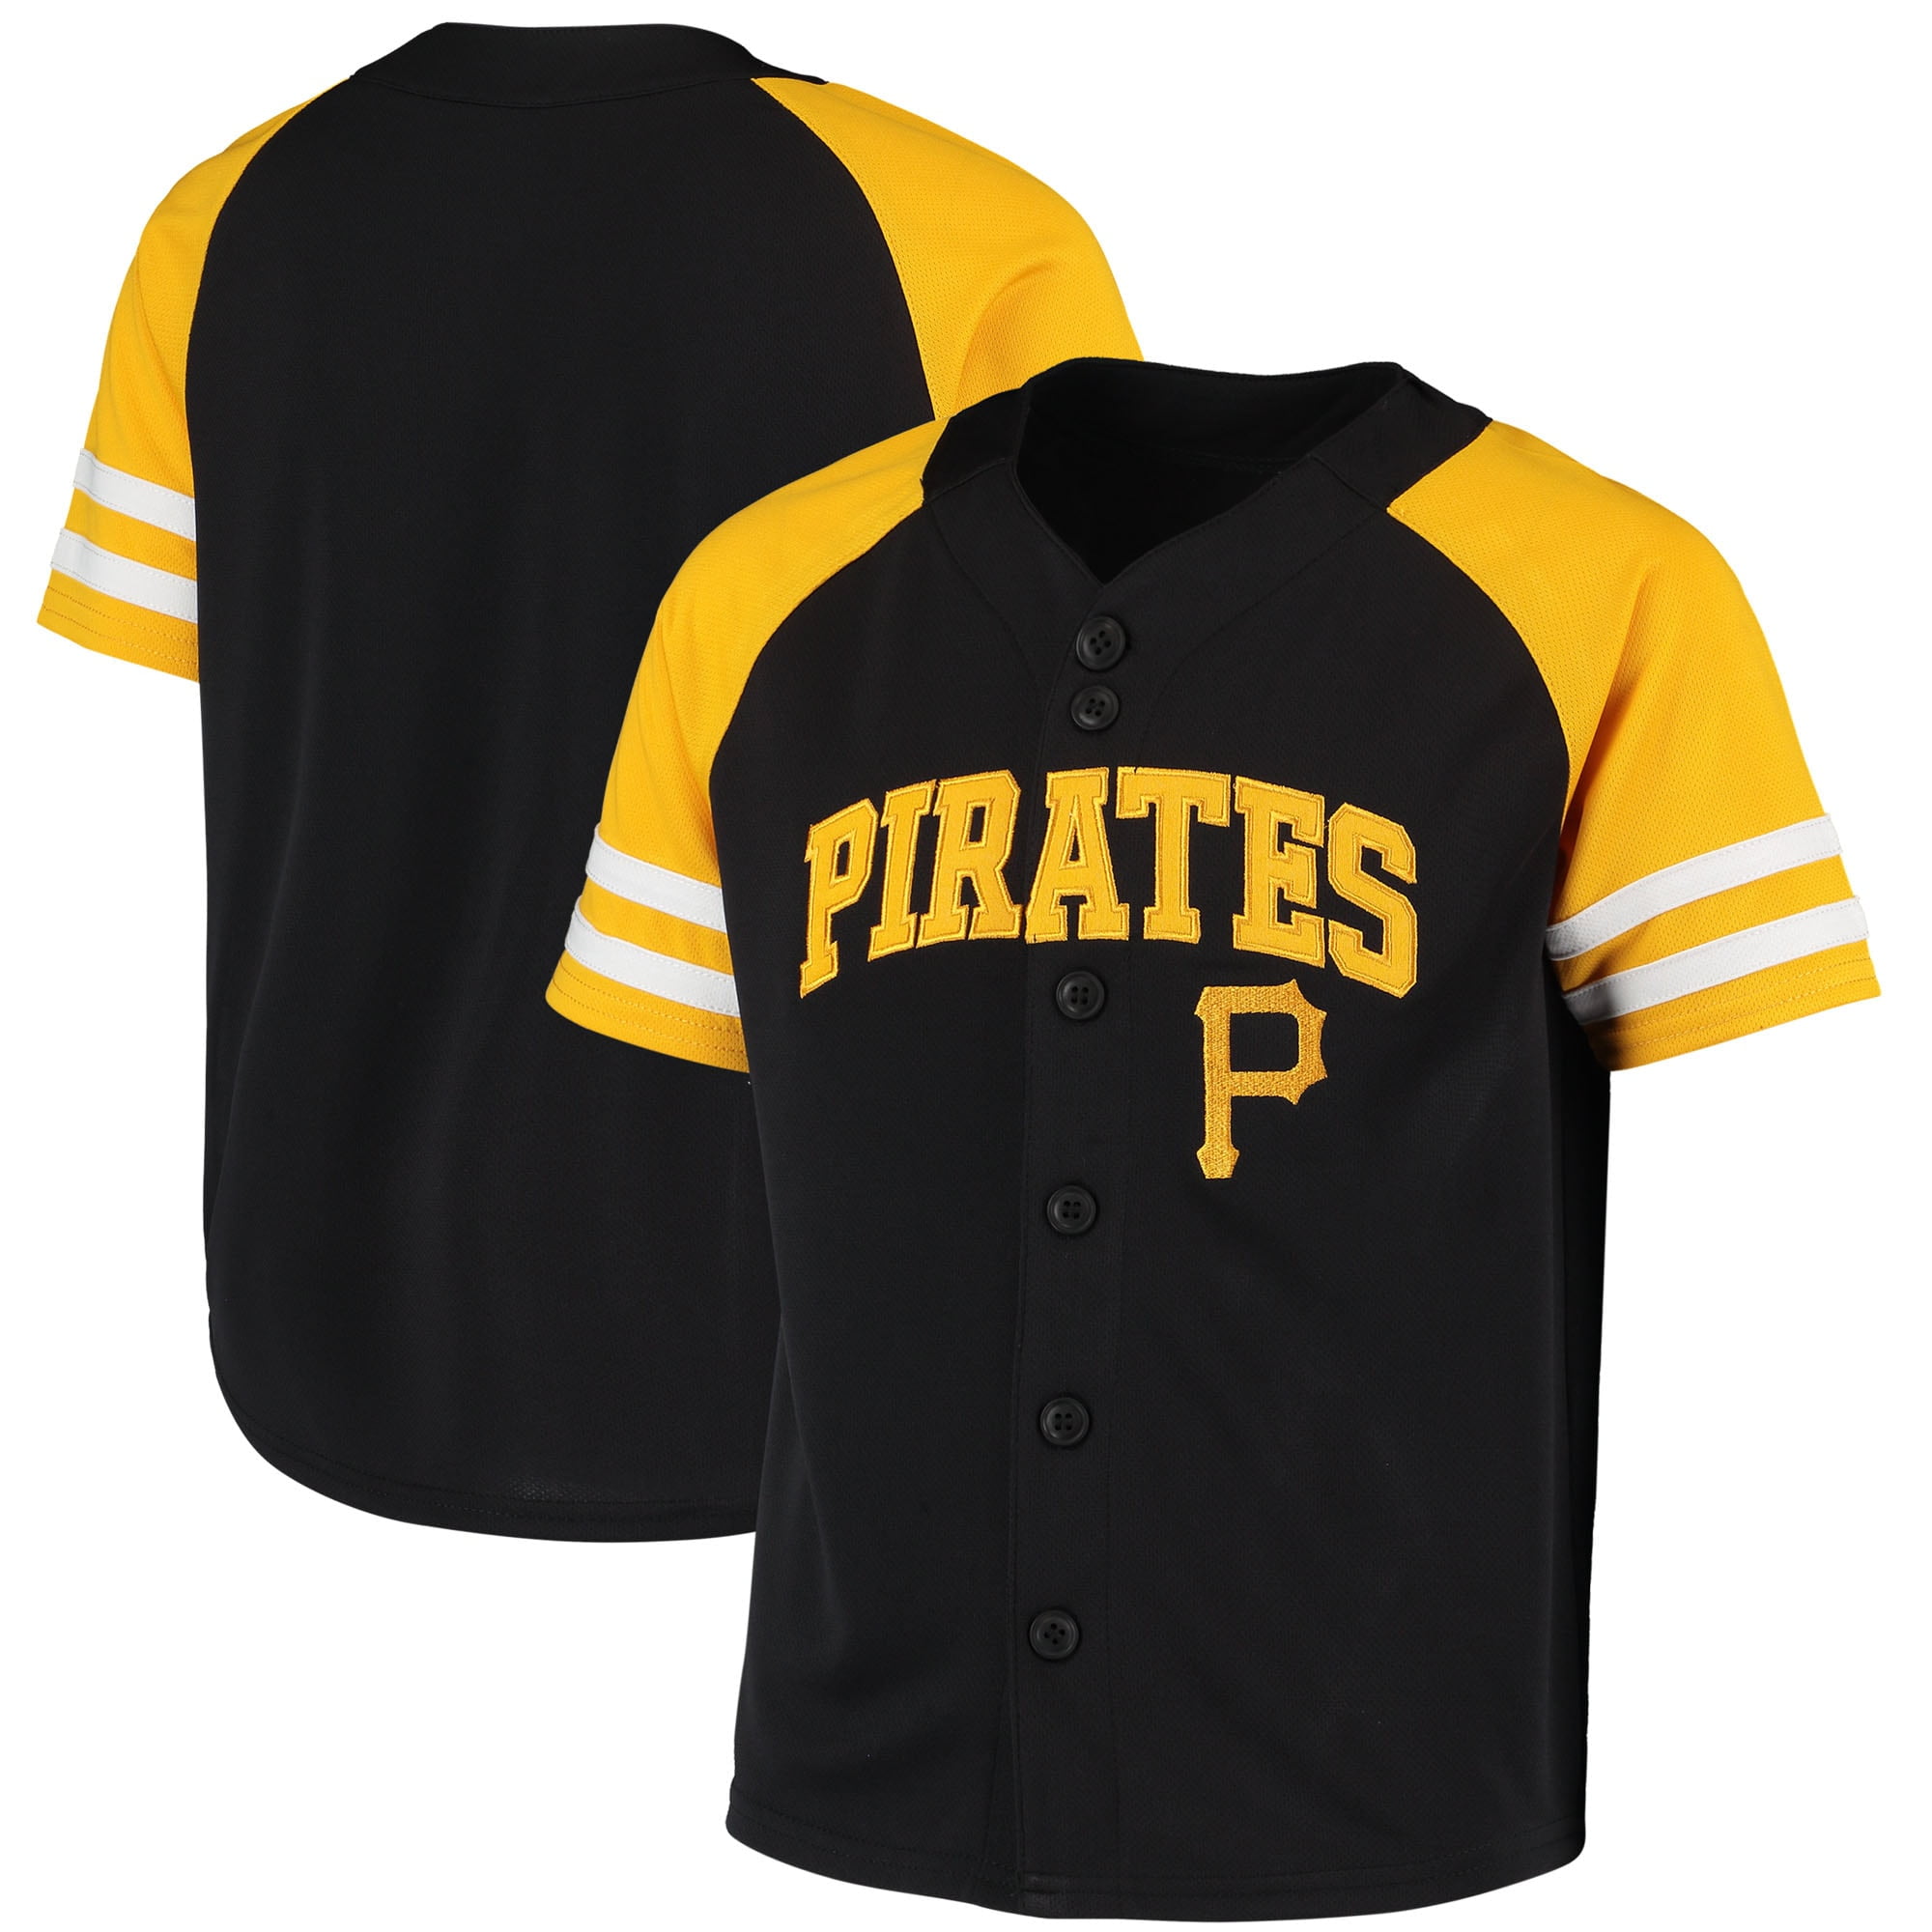 pittsburgh pirates toddler jersey